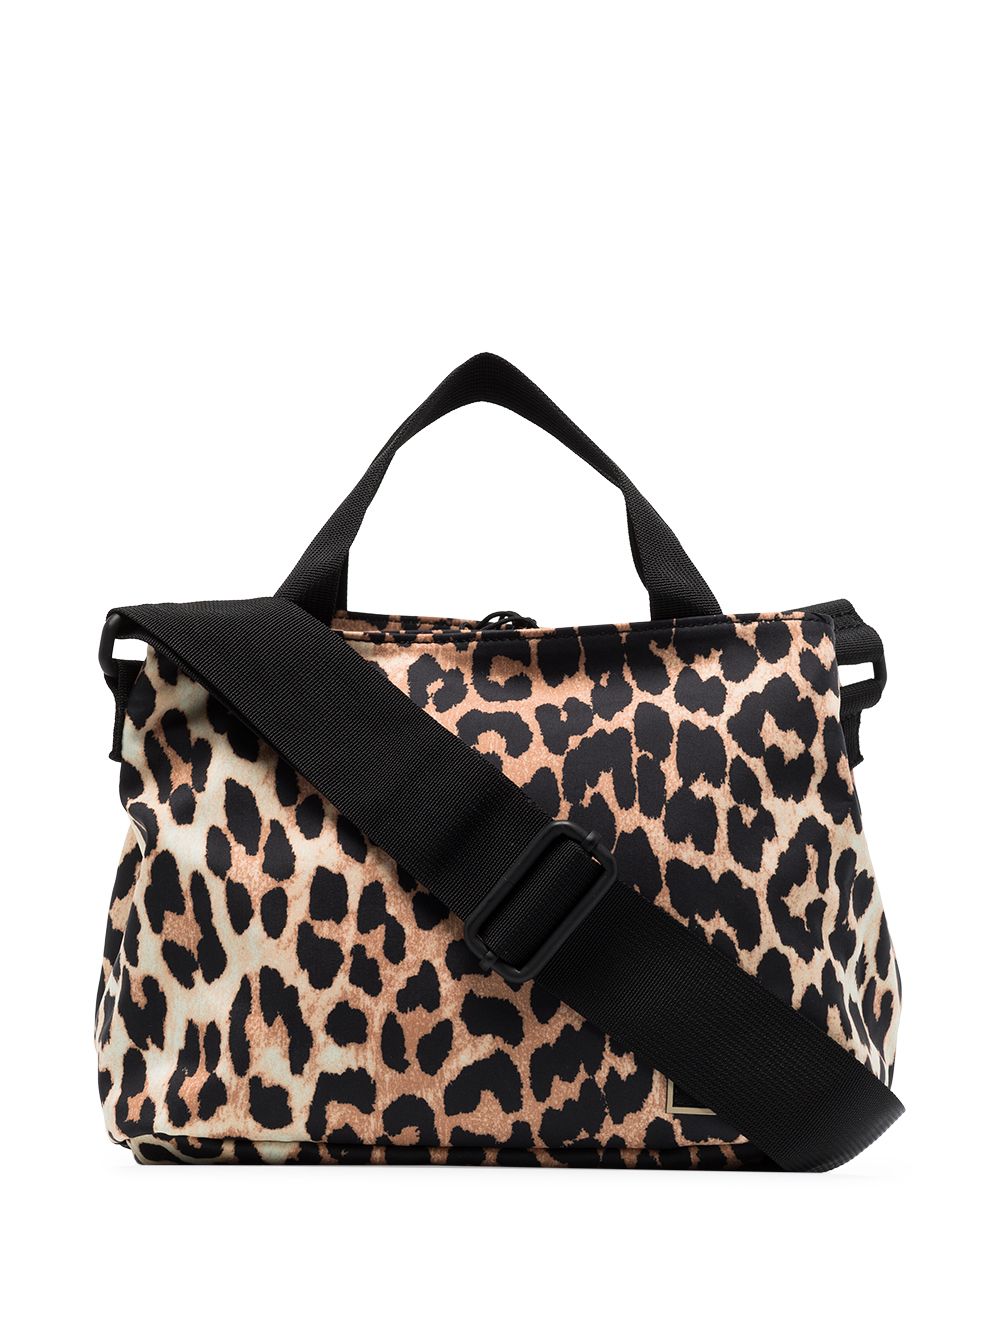 фото Ganni brown and black leopard print shoulder bag